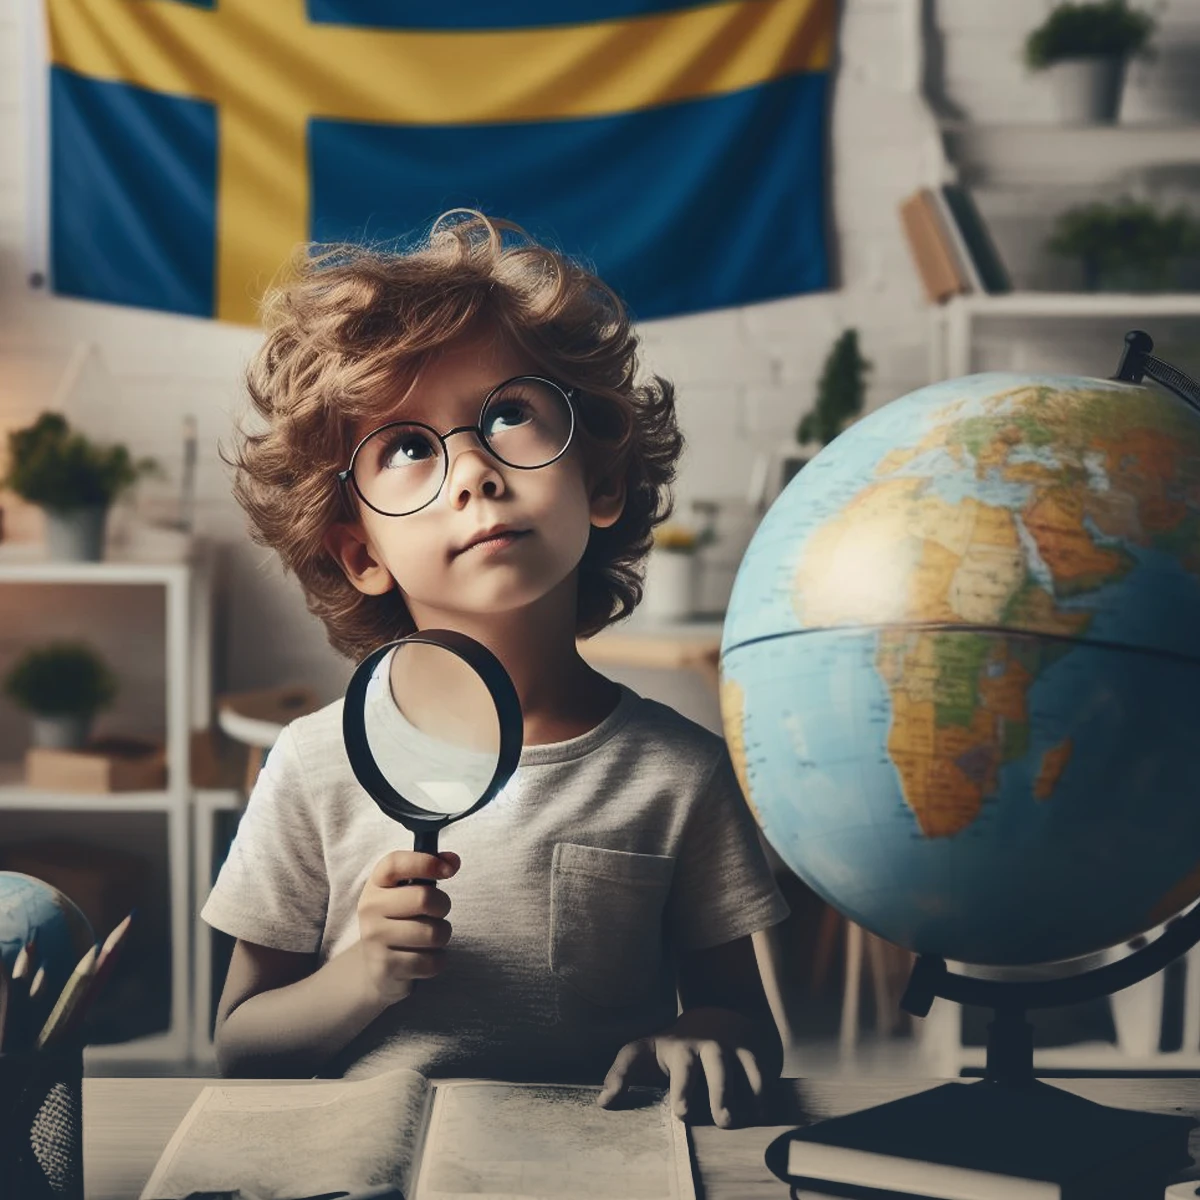 حقایق و قوانین جالب در مورد سوئد